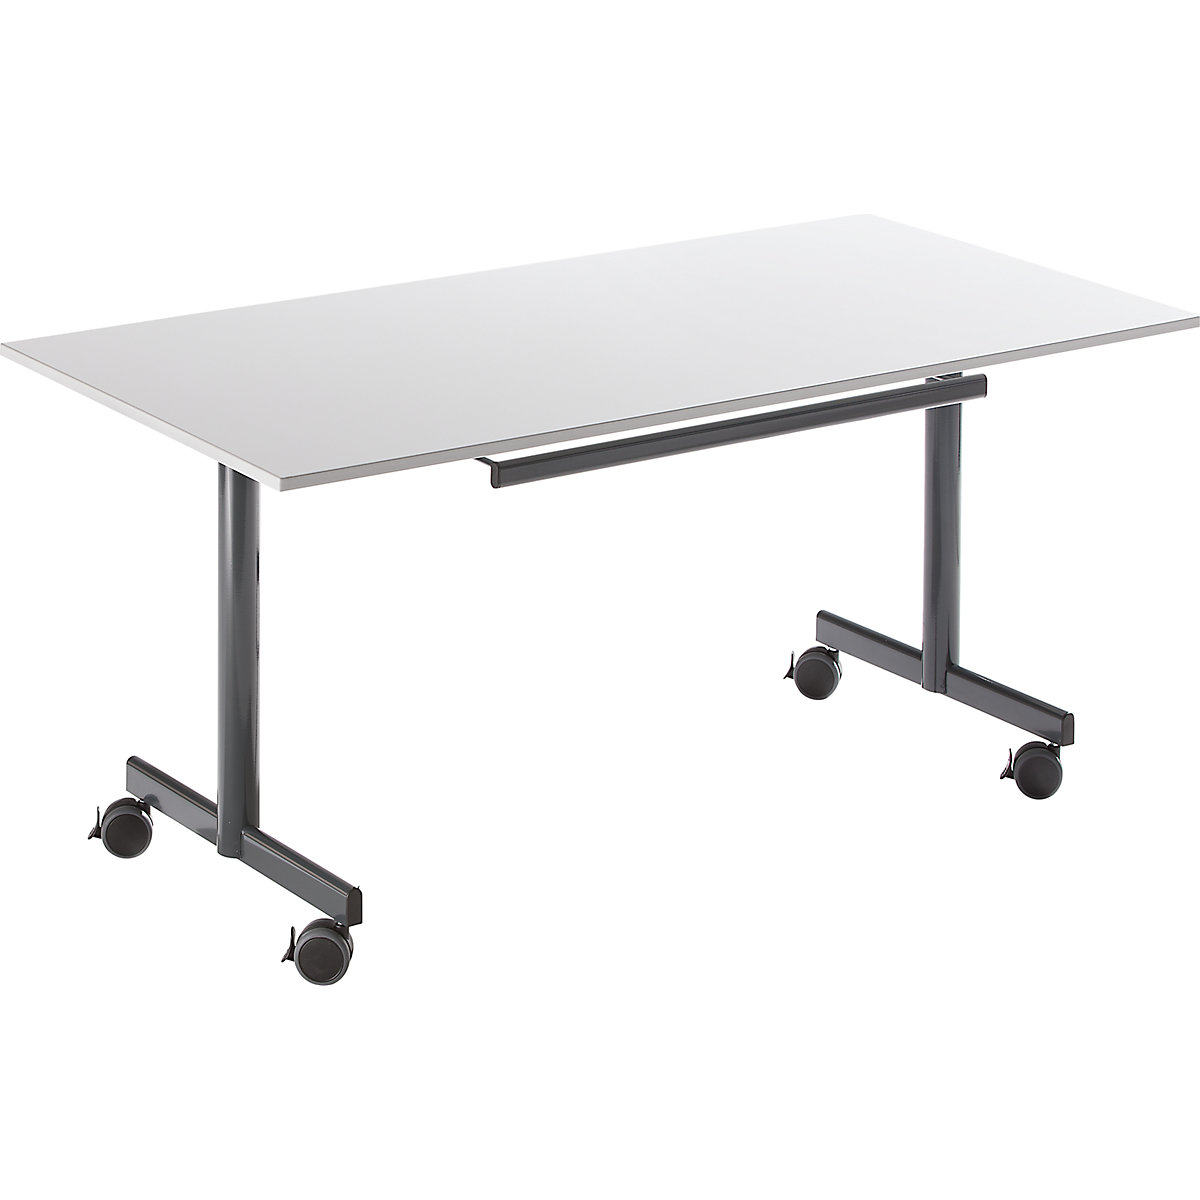 Tisch mit abklappbarer Platte, mobil, HxBxT 720 x 1400 x 800 mm, grau-3